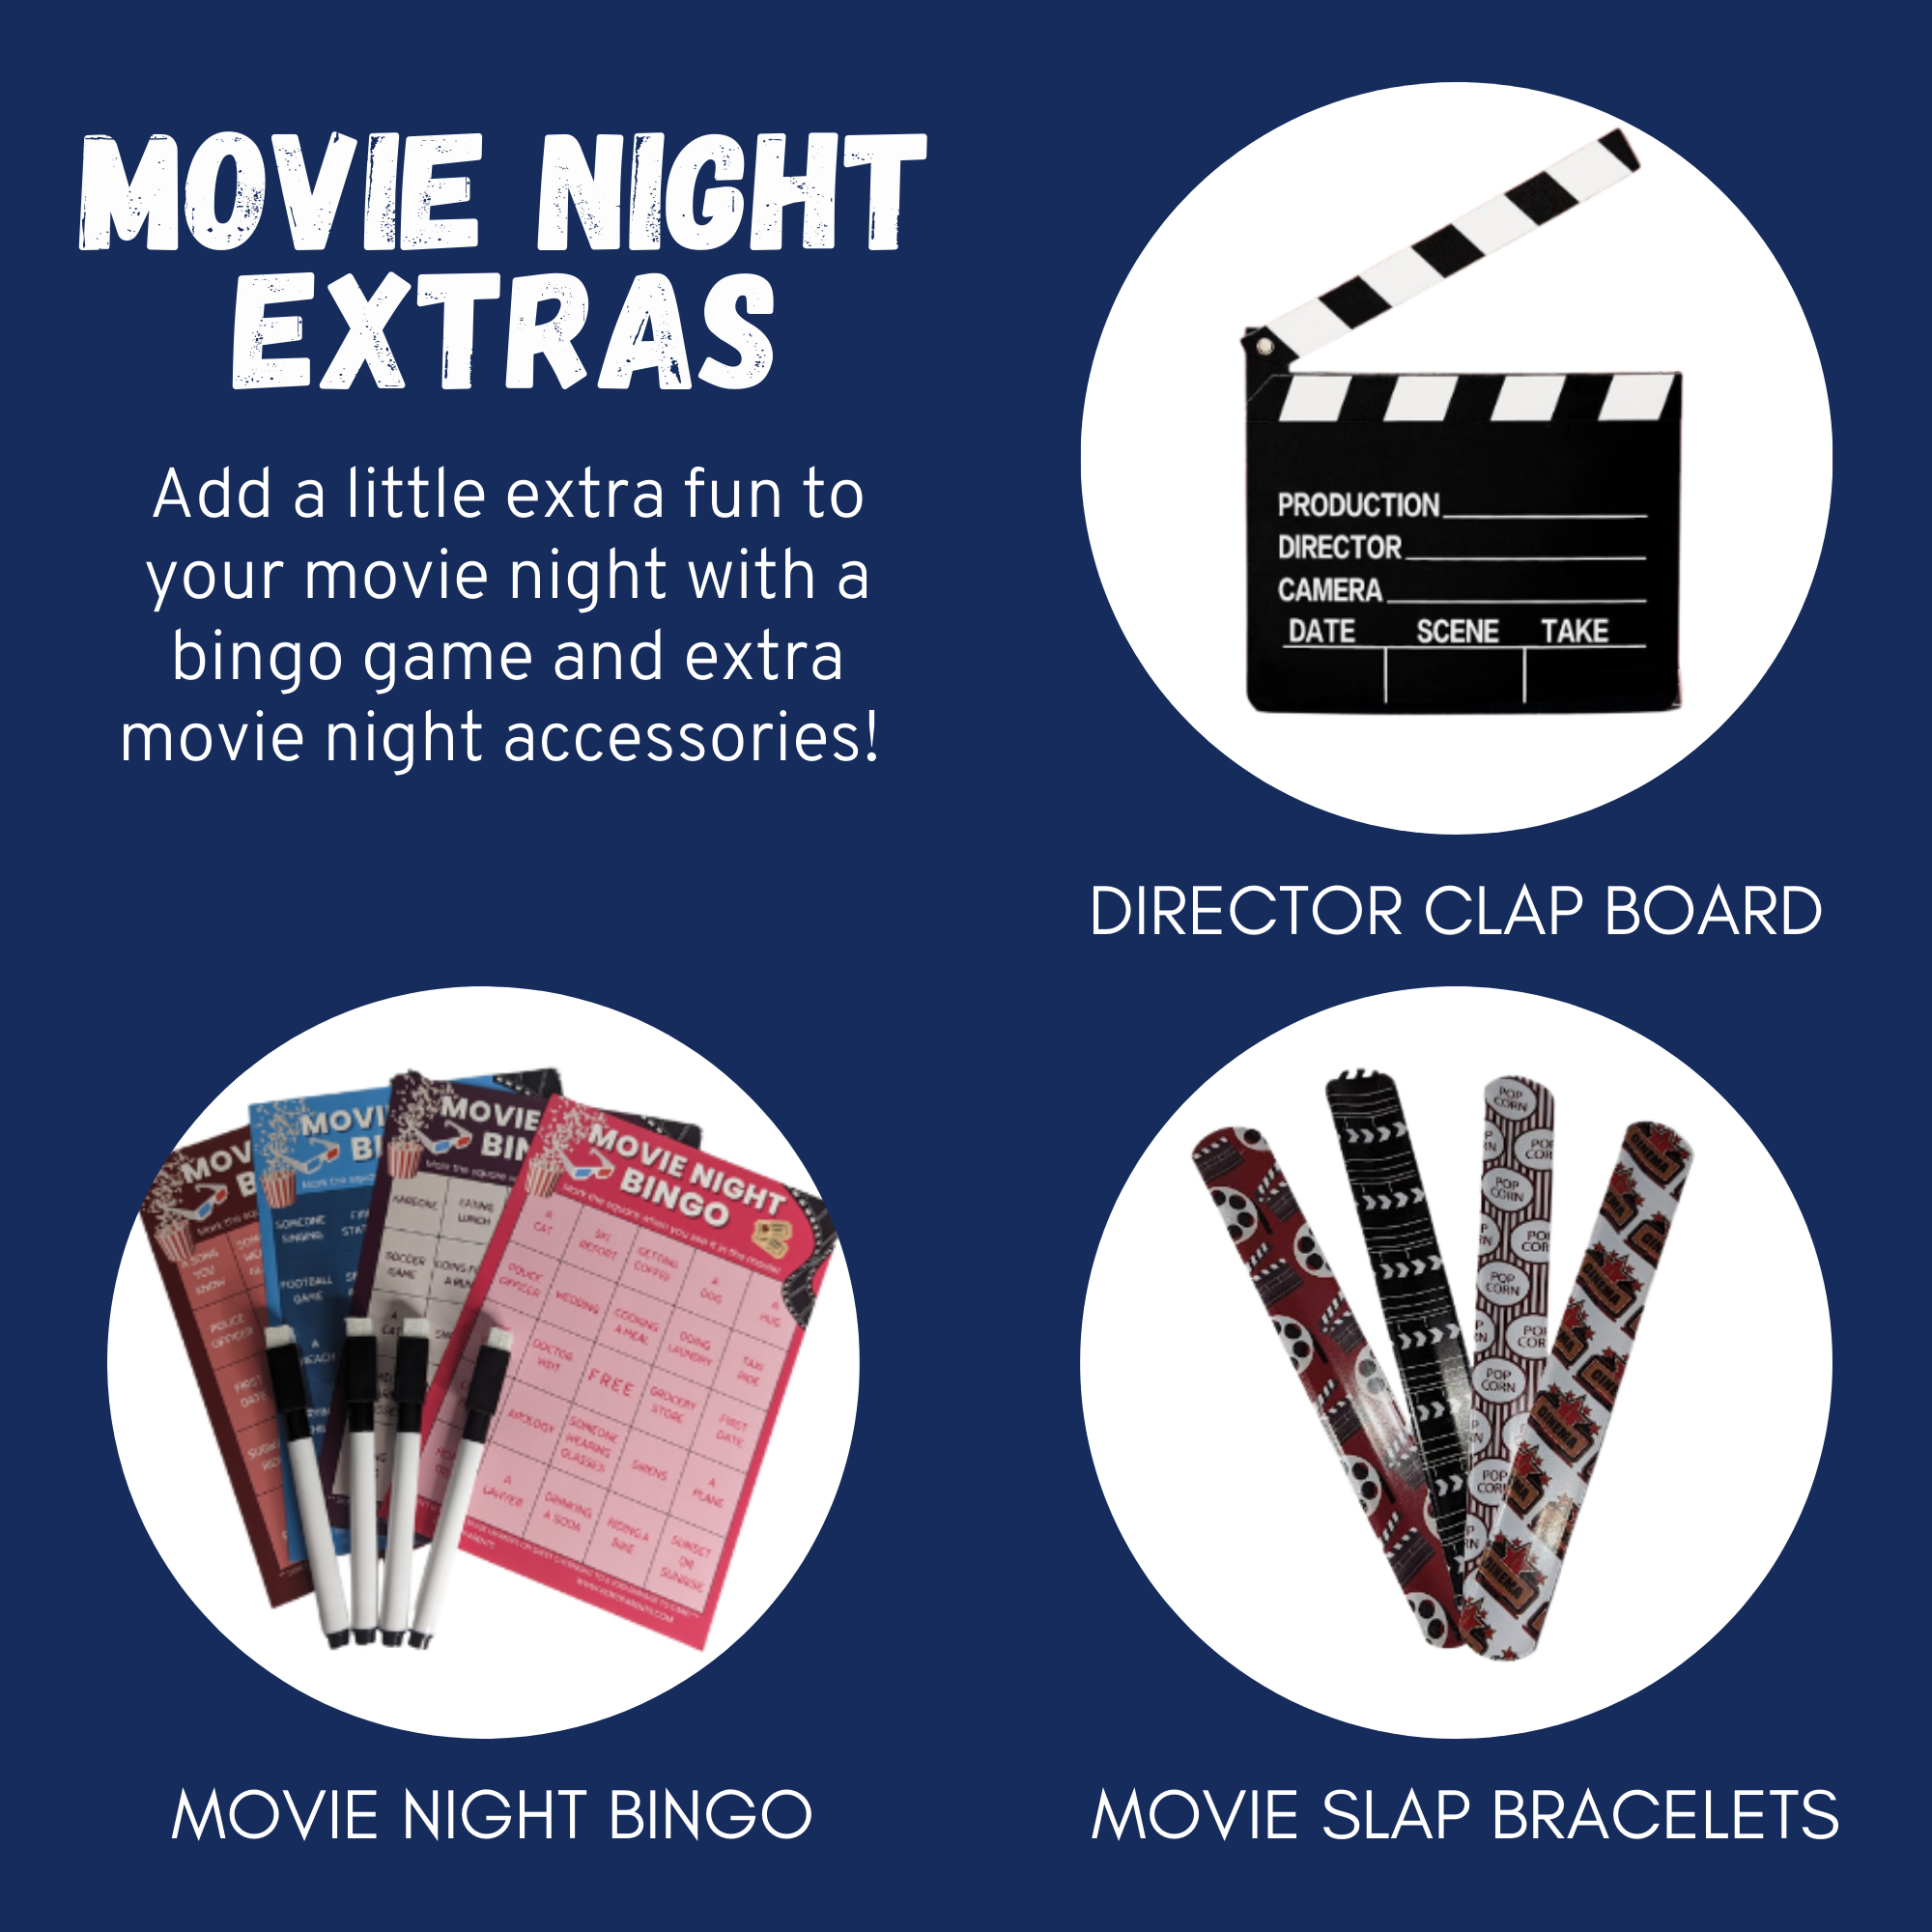 Movie Night Gift Box Set Snacks + Movie Night Bingo & More